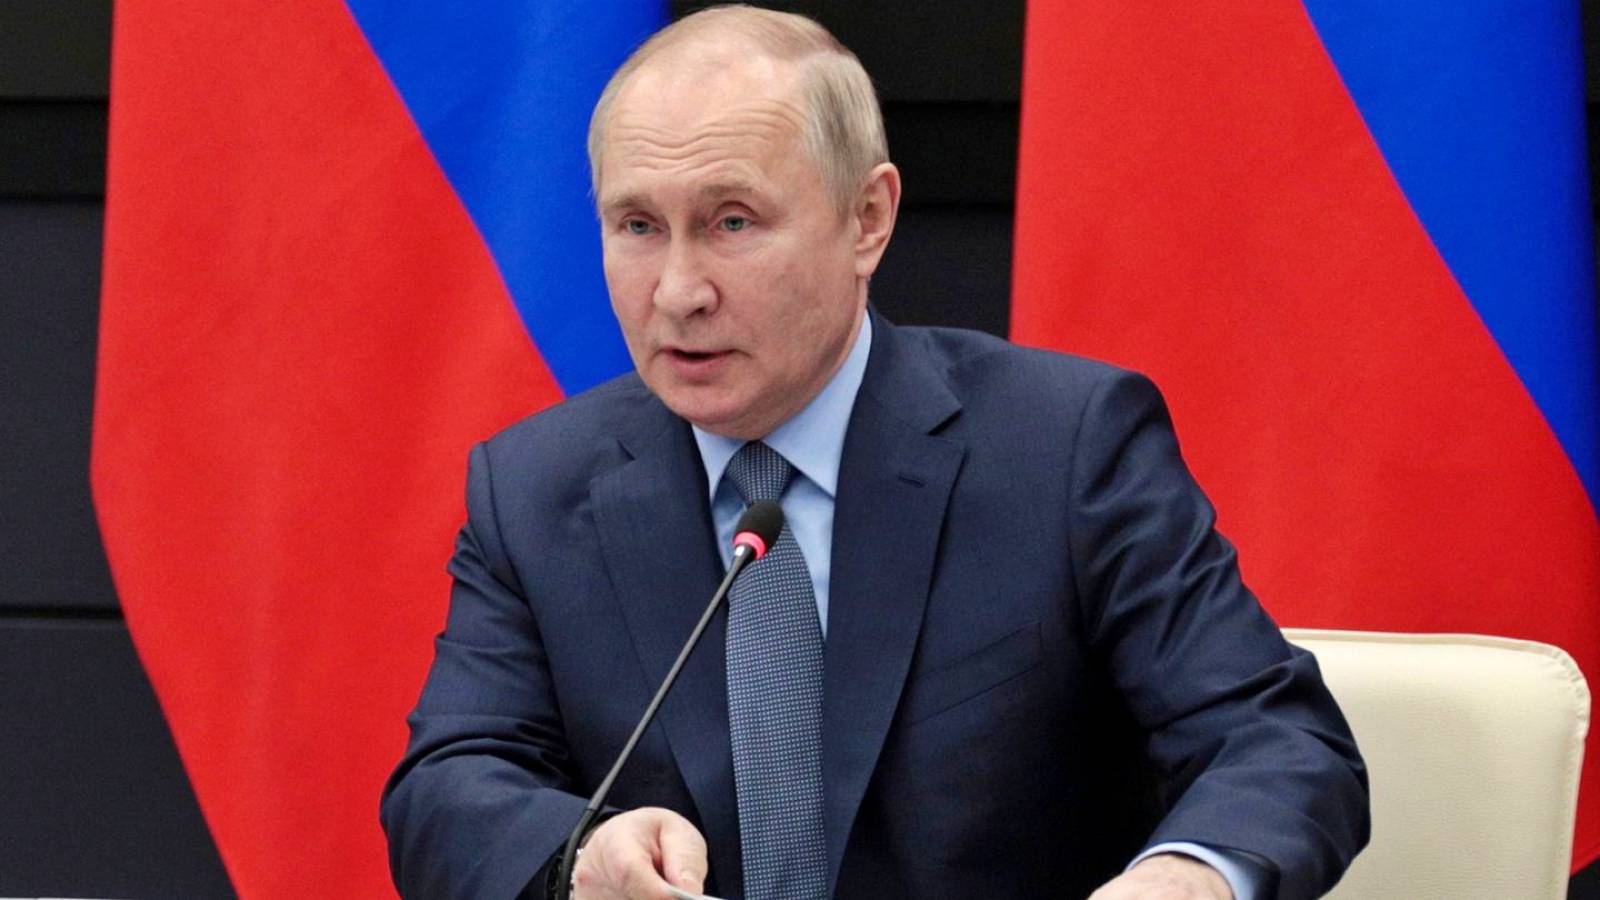 Vladimir Putin attacca l’Occidente, accusando la Russia di averla costretta a invadere l’Ucraina